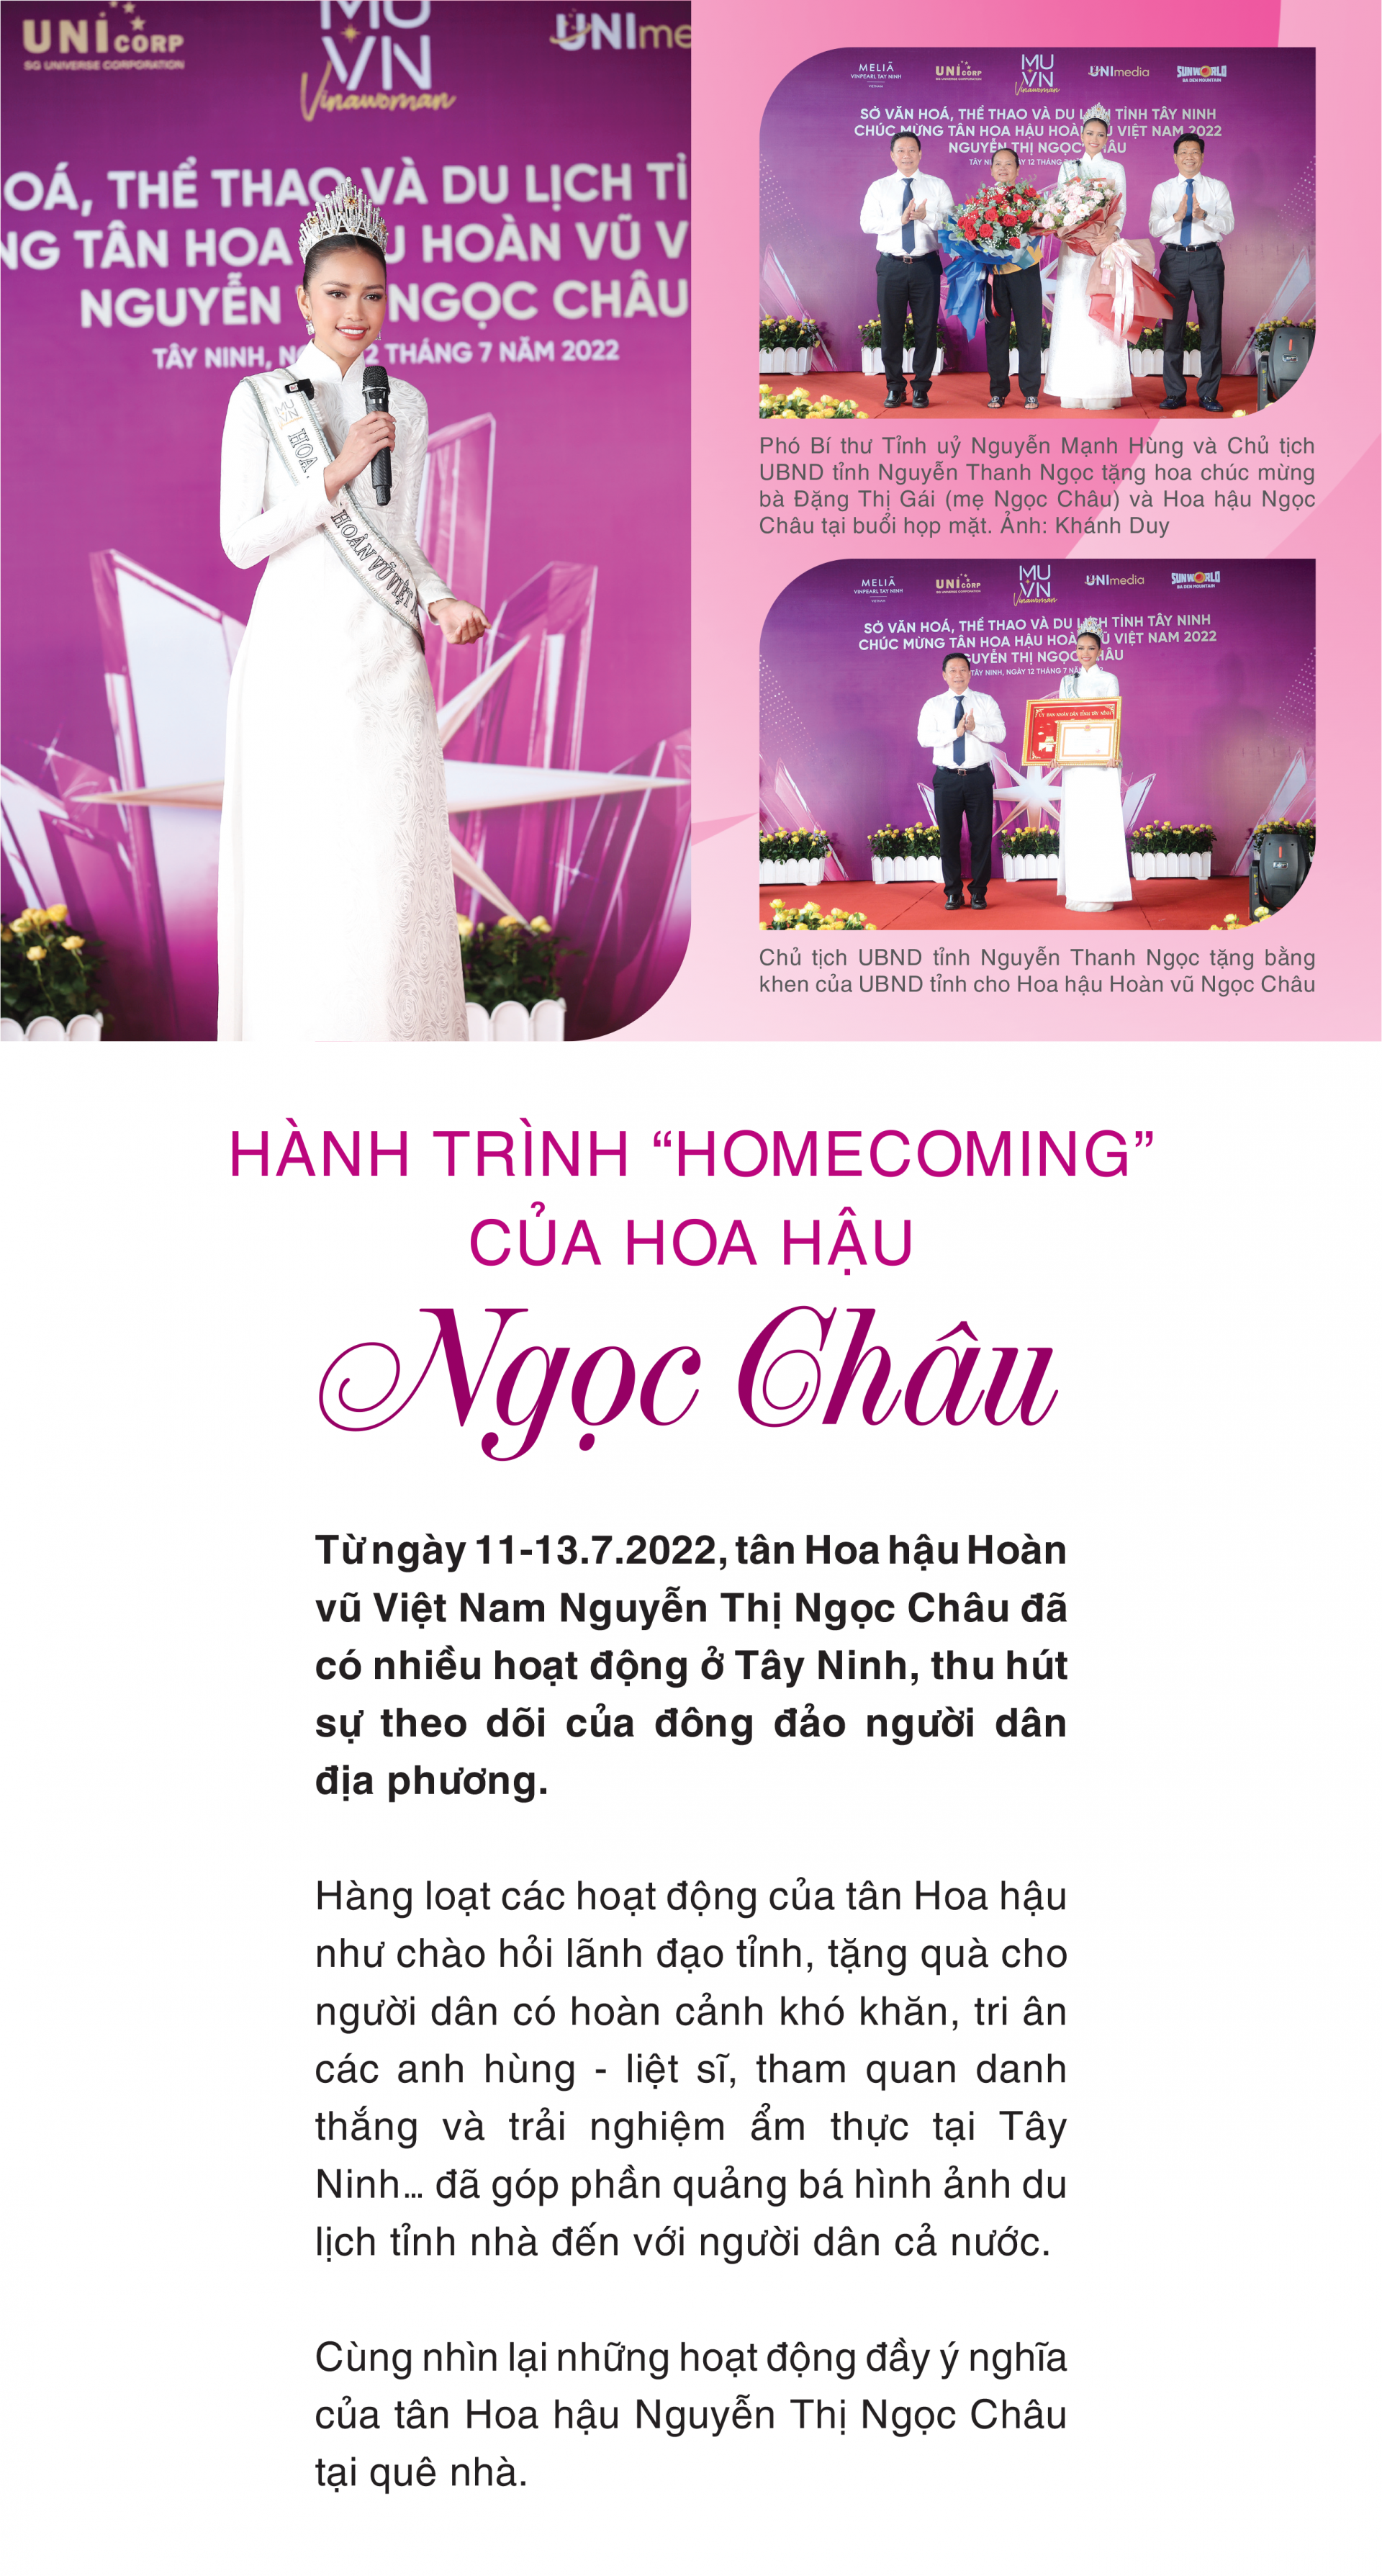 Hành trình “Homecoming” của Hoa hậu Ngọc Châu